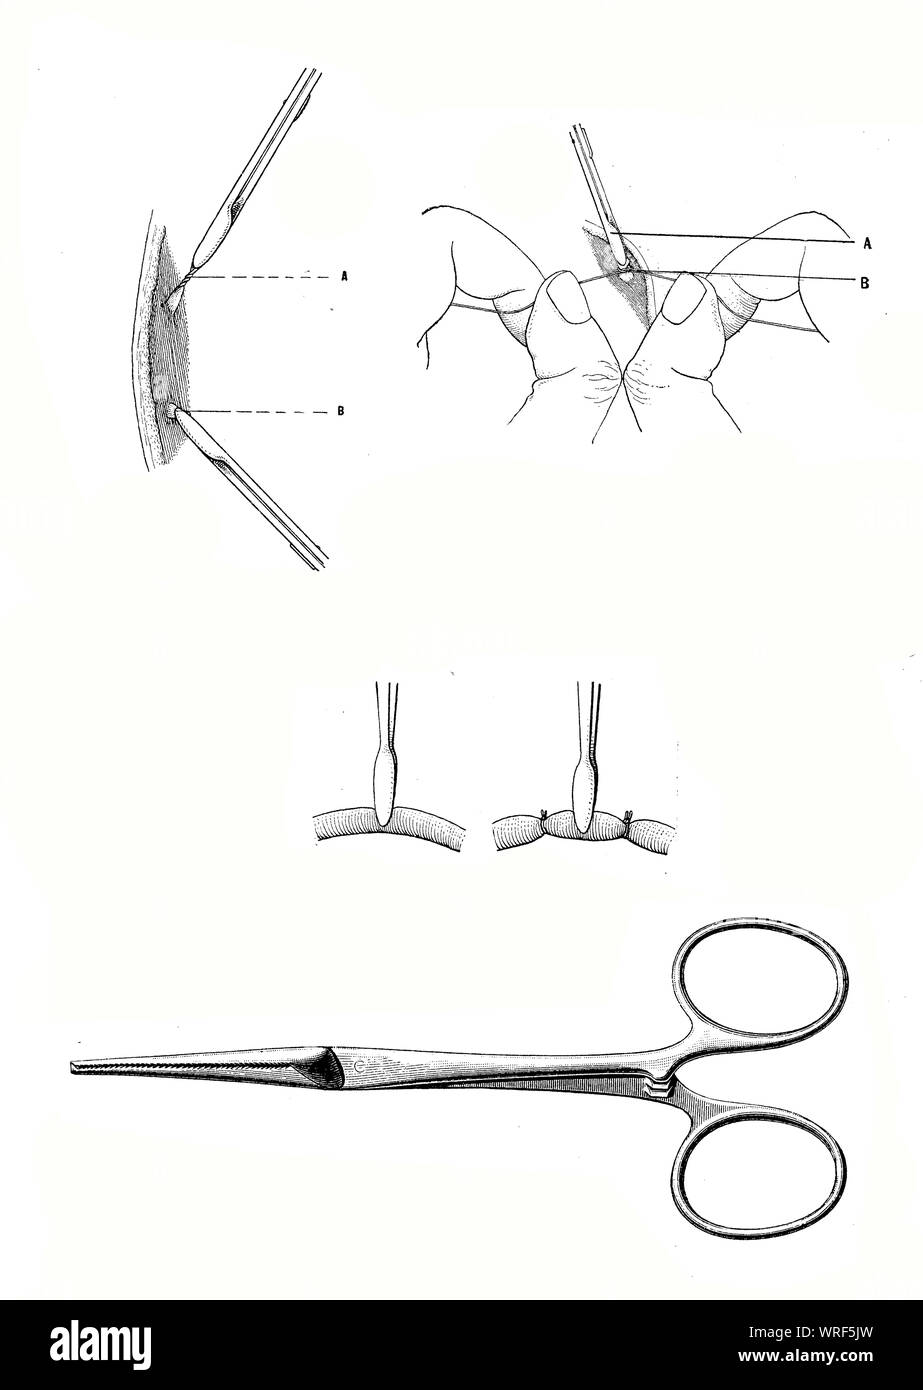 Chirurgie und Medizin - blutstillung Schelle, chirurgische Instrument zu Blutungen während einer Operation vor dem Sichern mit einer Ligatur. Stockfoto